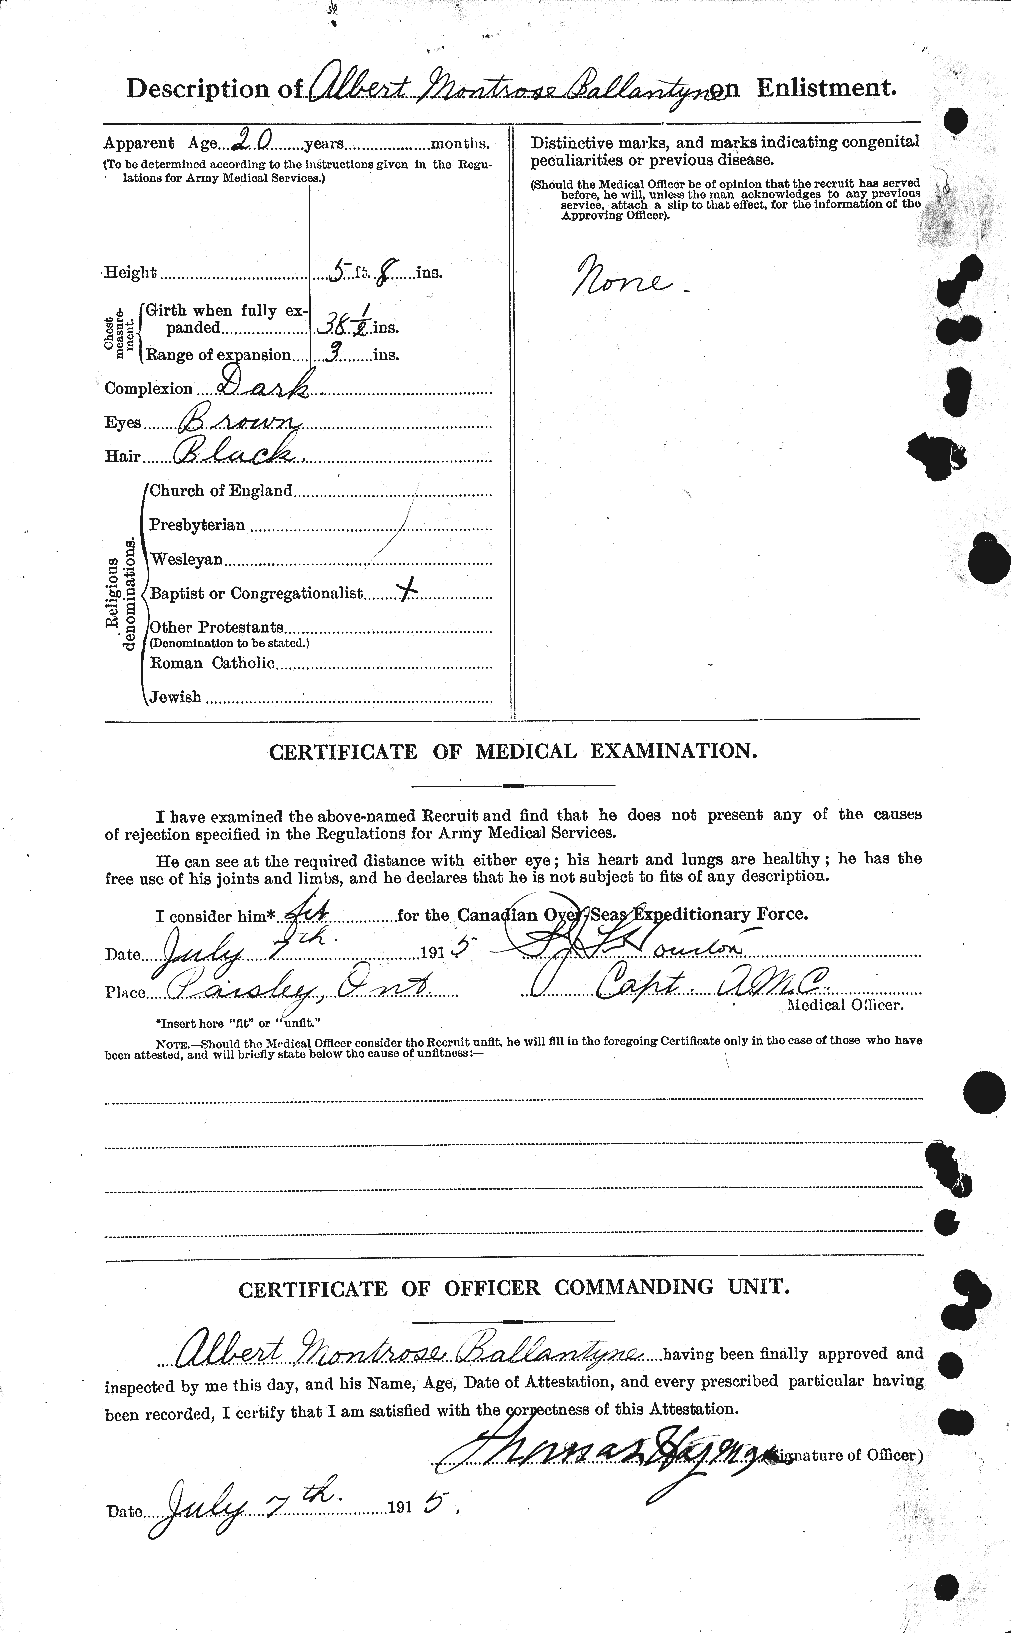 Dossiers du Personnel de la Première Guerre mondiale - CEC 219837b